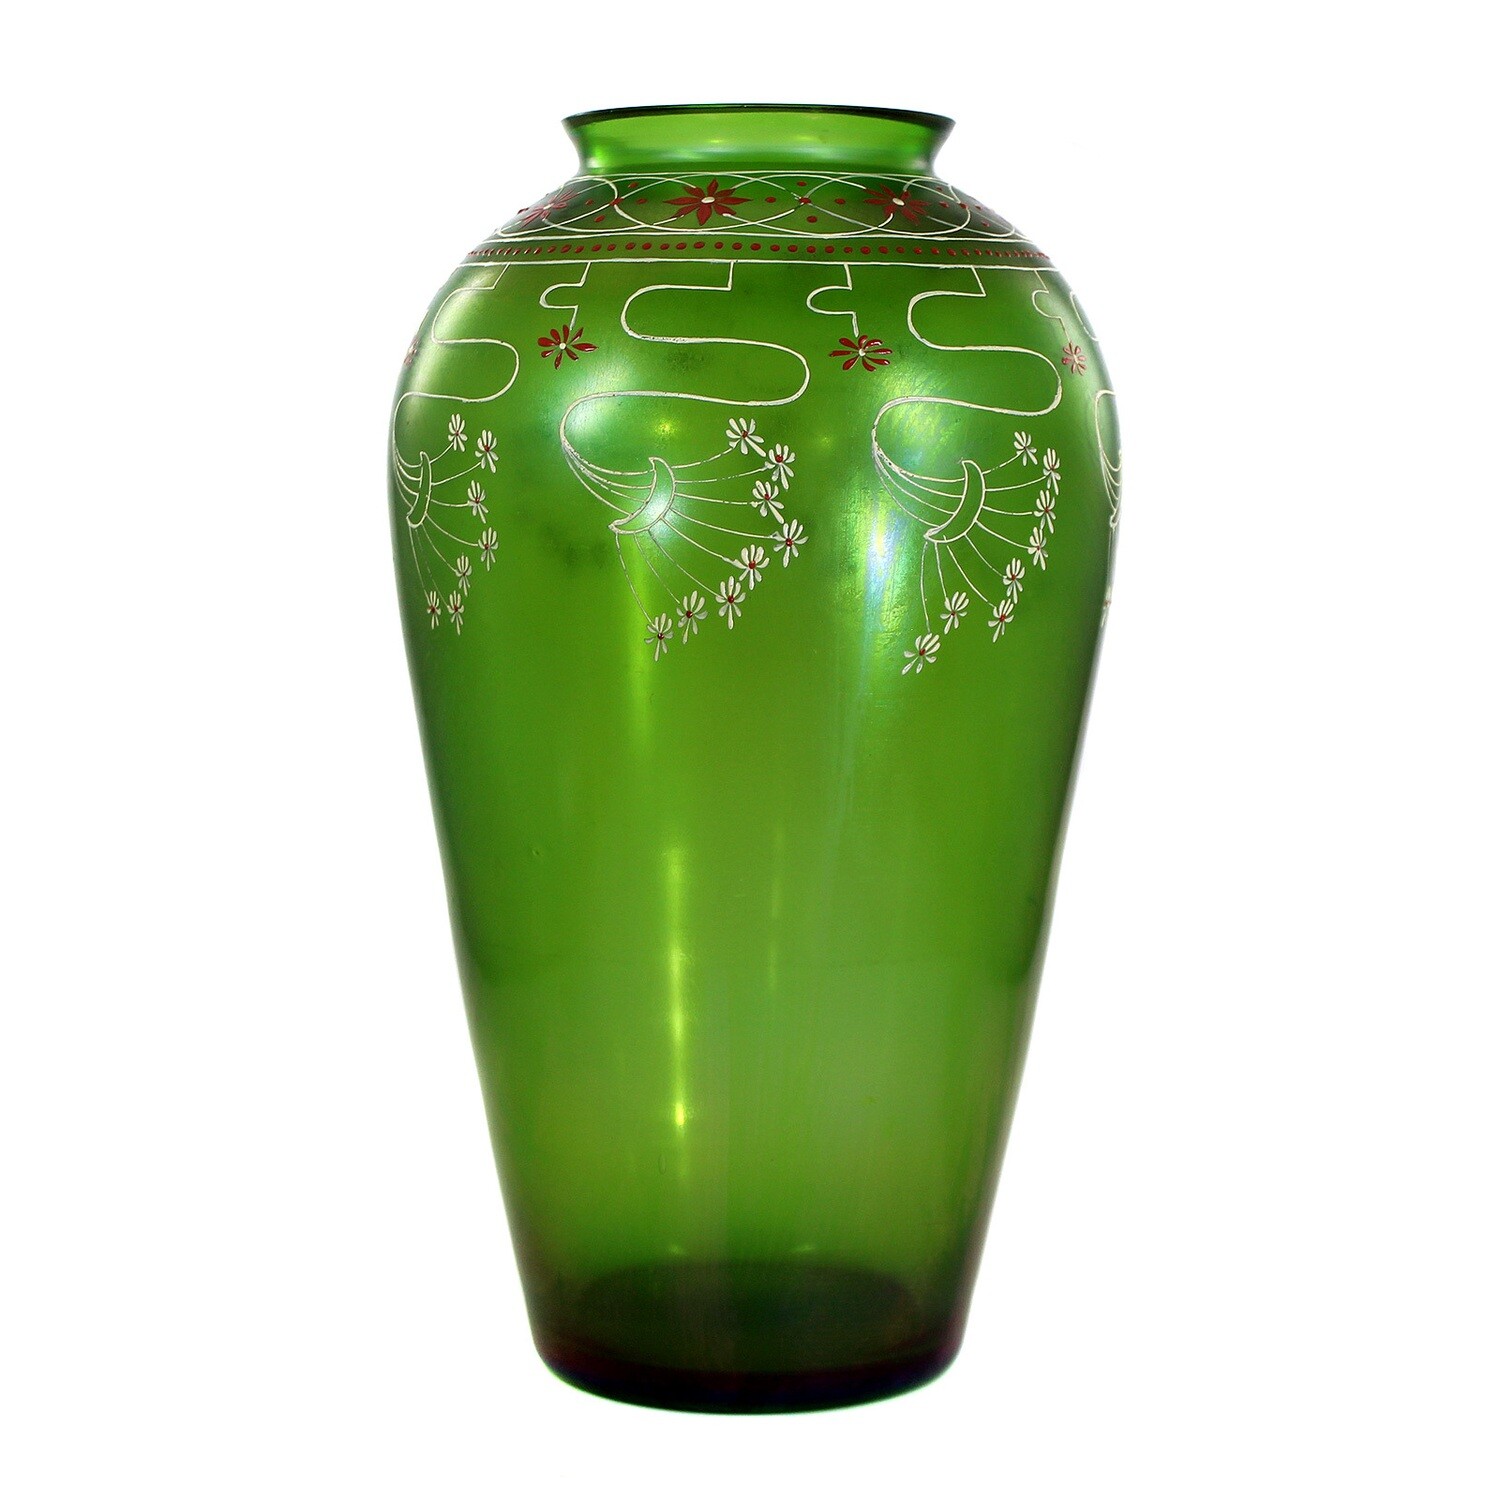 Grosse Vase aus grünem Glas mir Emailmalerei, Fritz Heckert, Entw. Sütterlin